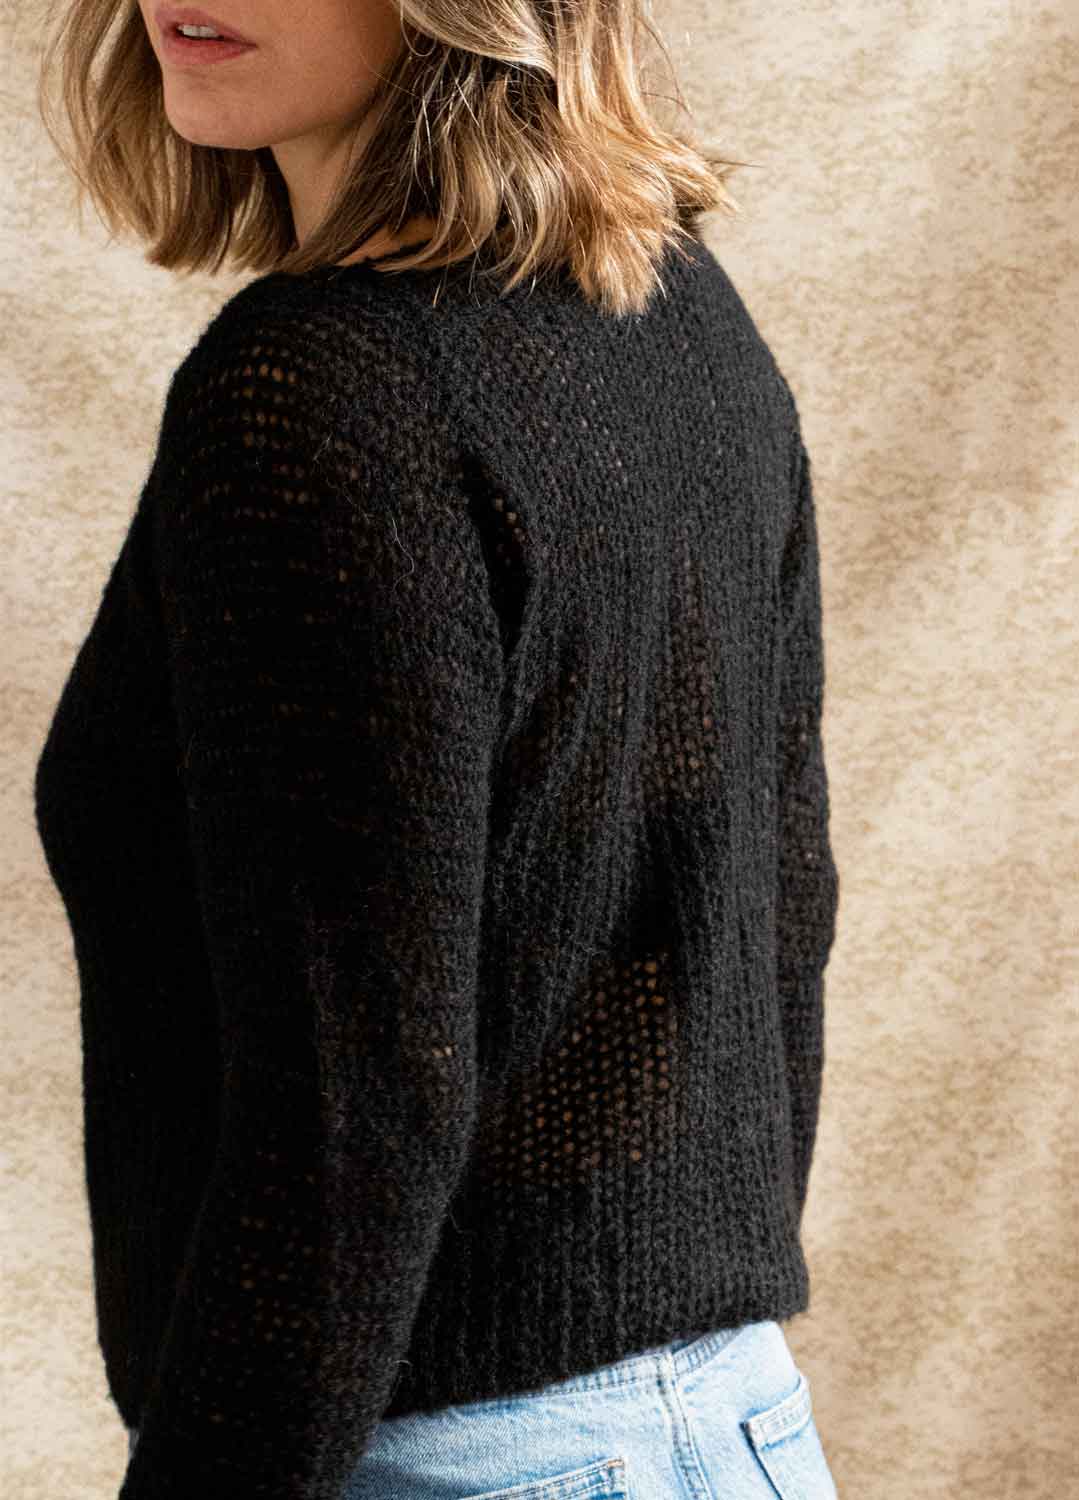 Make Sweater Kit